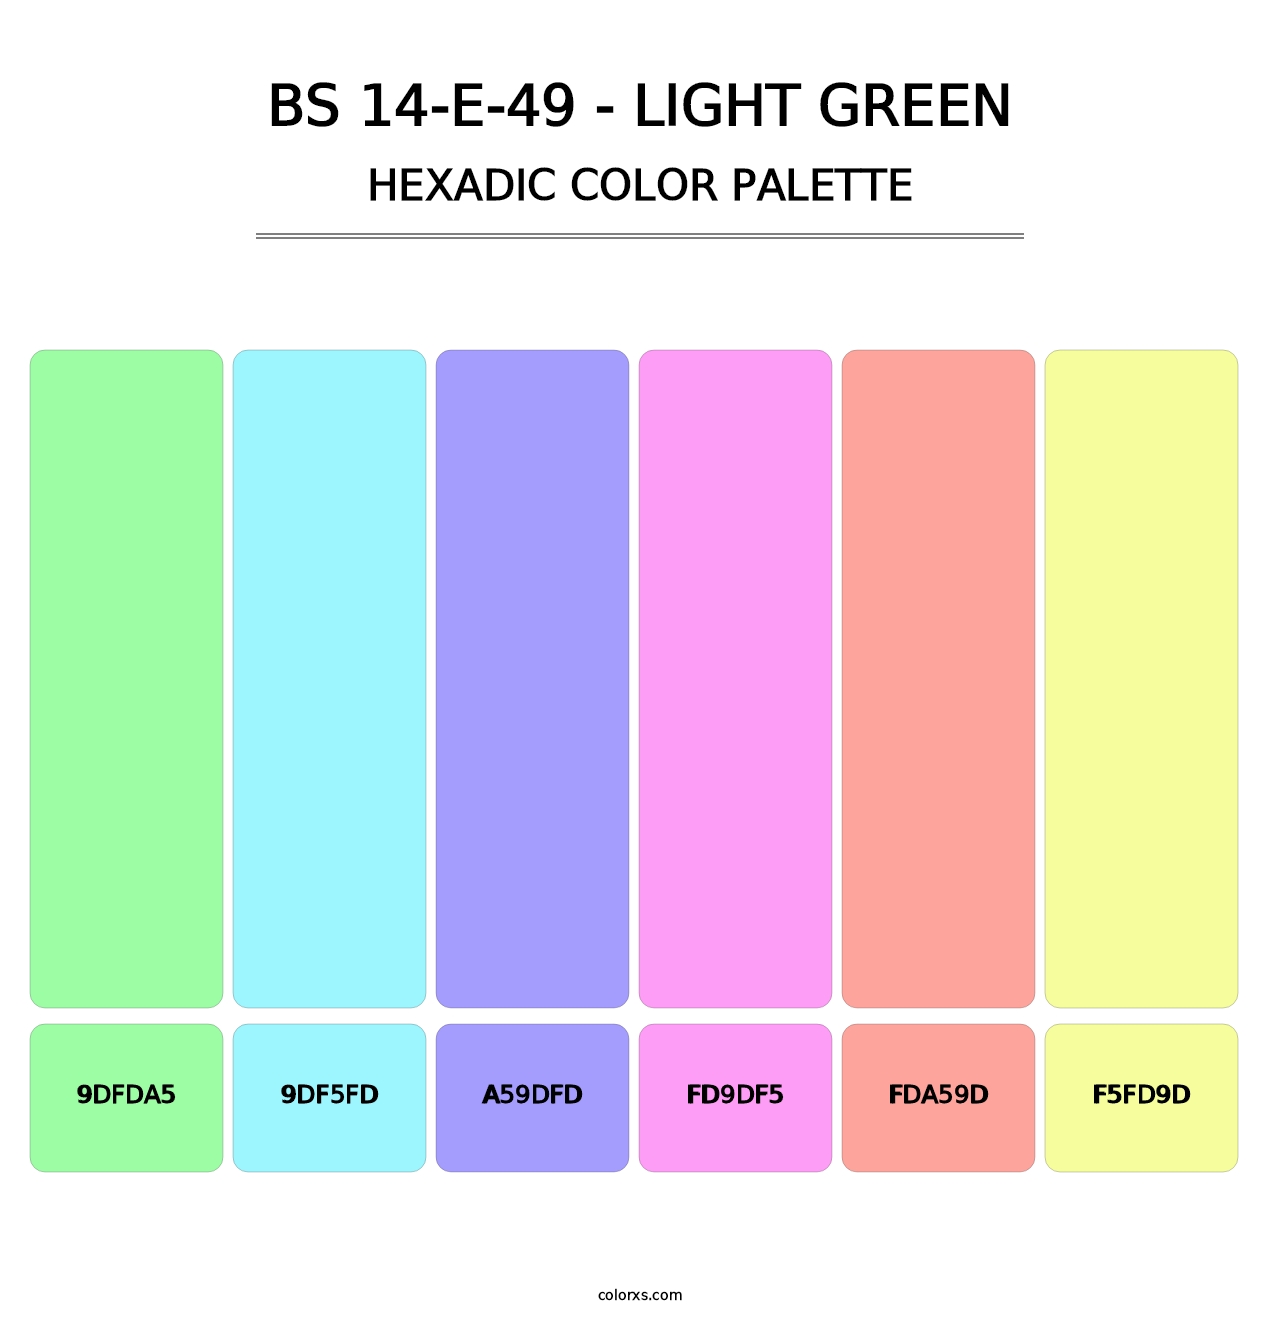 BS 14-E-49 - Light Green - Hexadic Color Palette